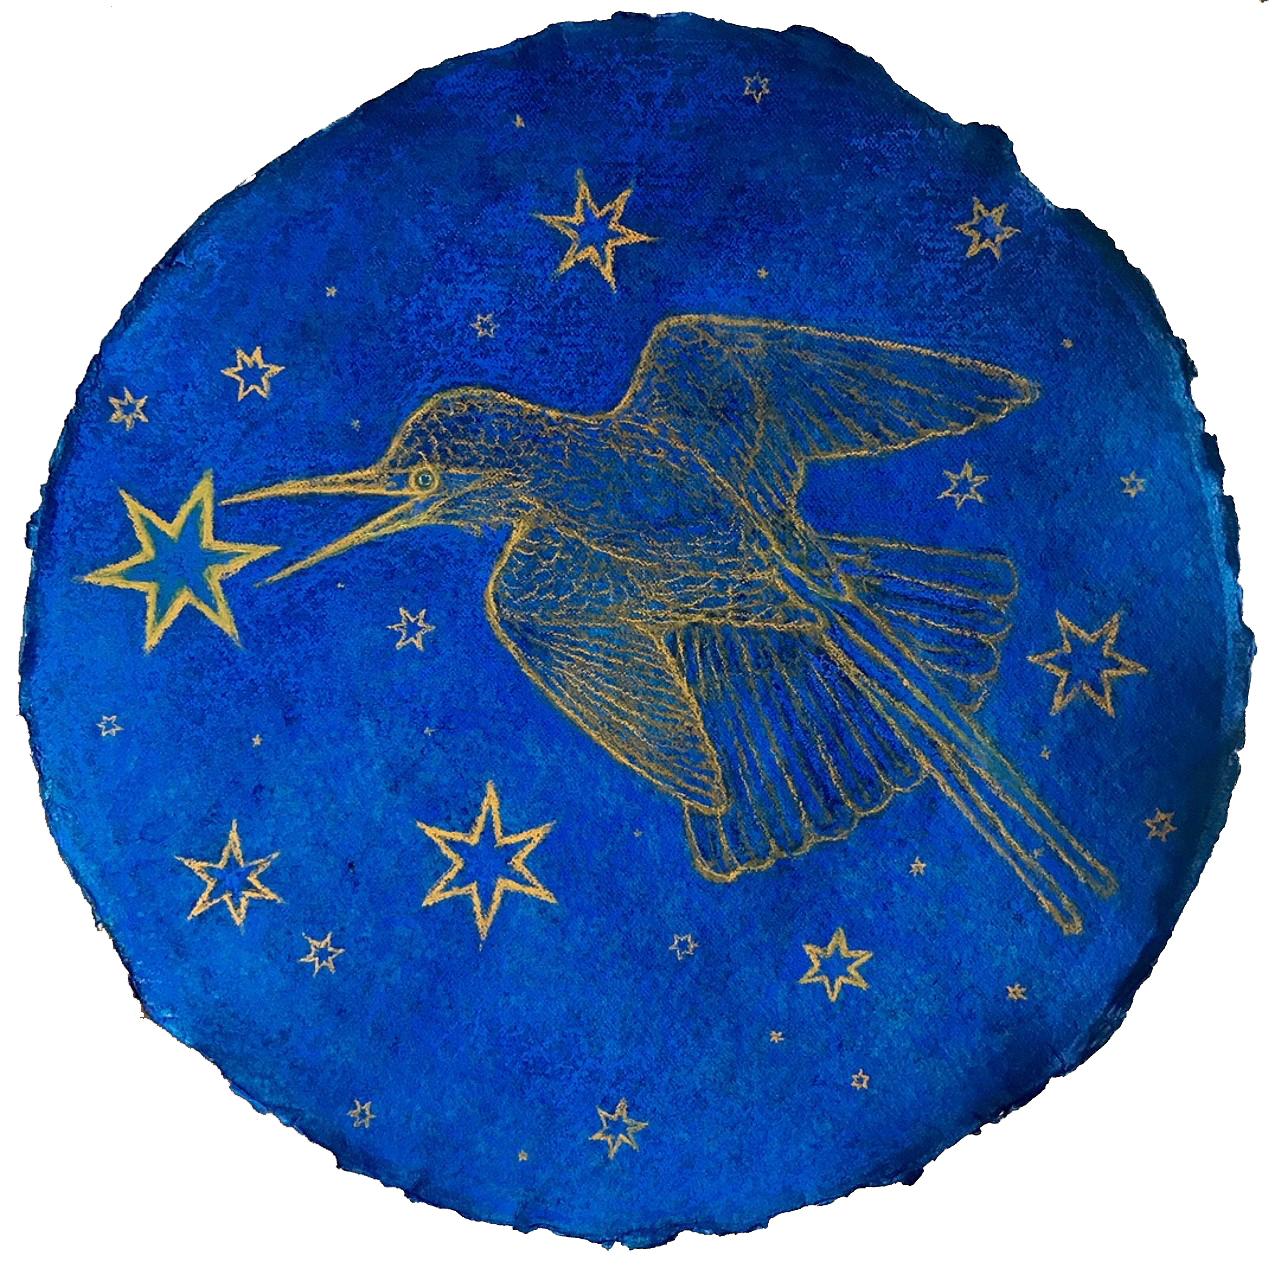 Hummingbird Augury : dessin bleu cobalt pastel sur papier fait main avec étoiles dorées